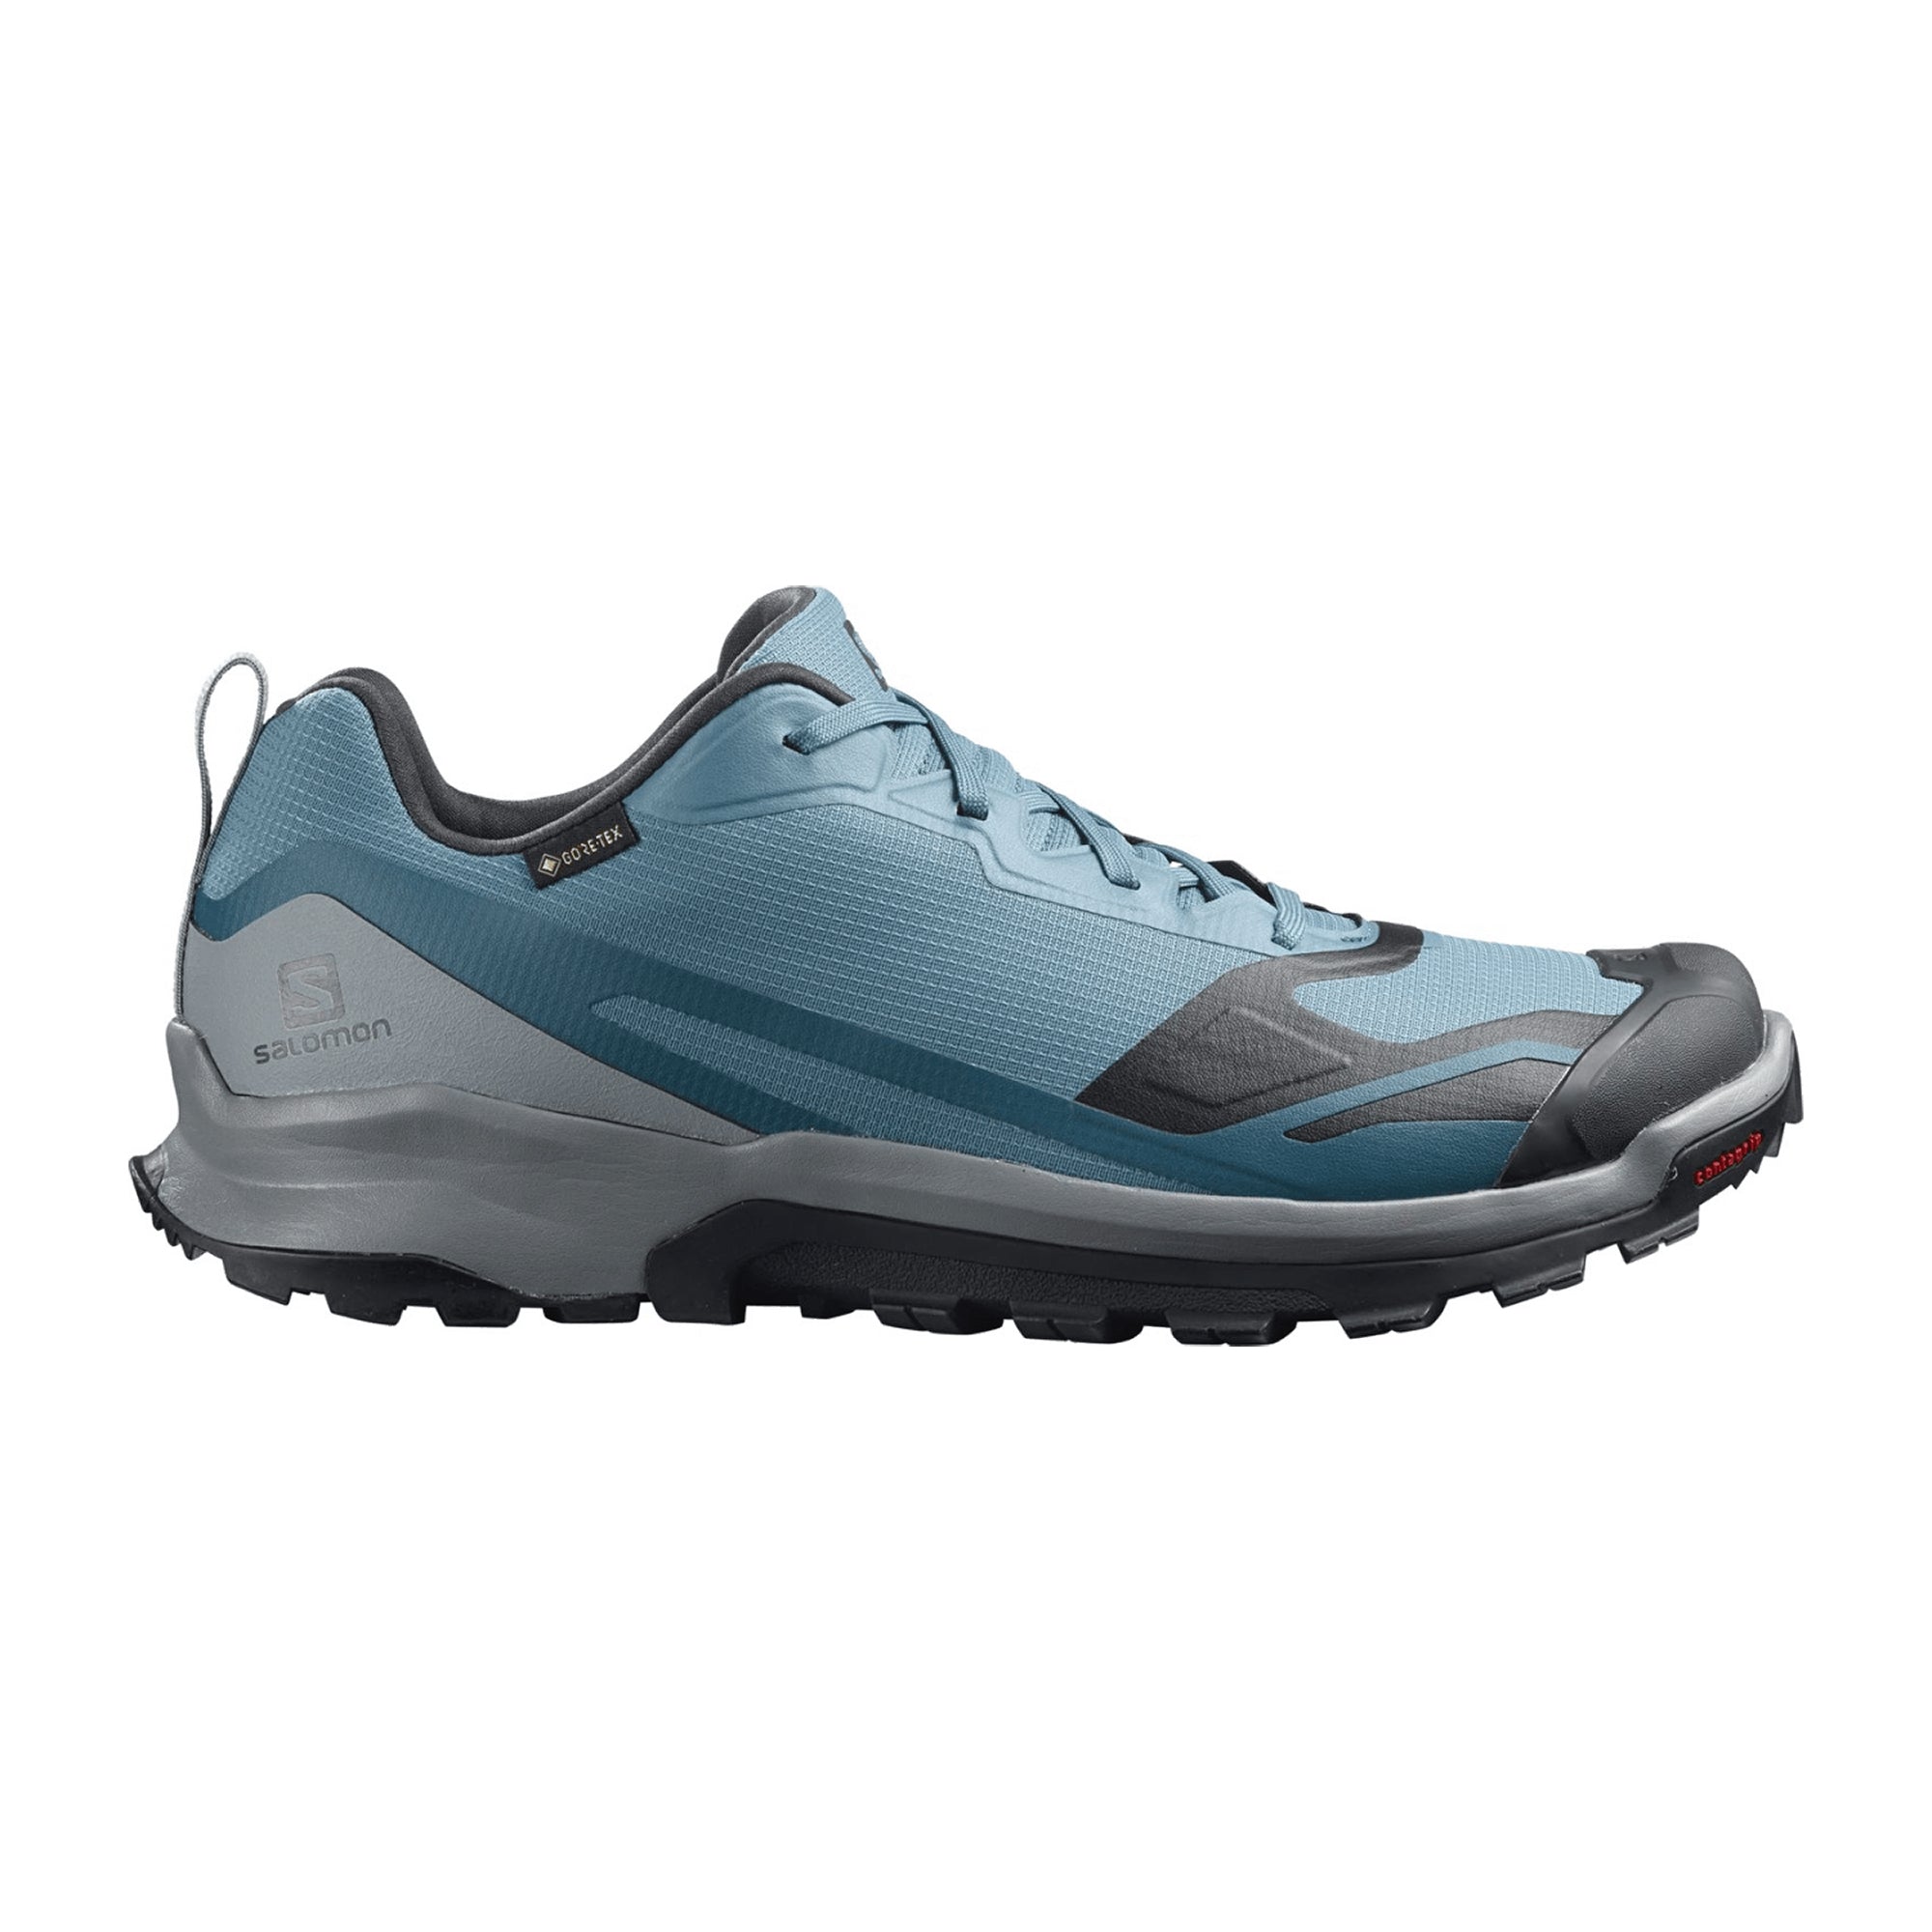 Salomon XA Collider 2 GTX for men, blue, shoes